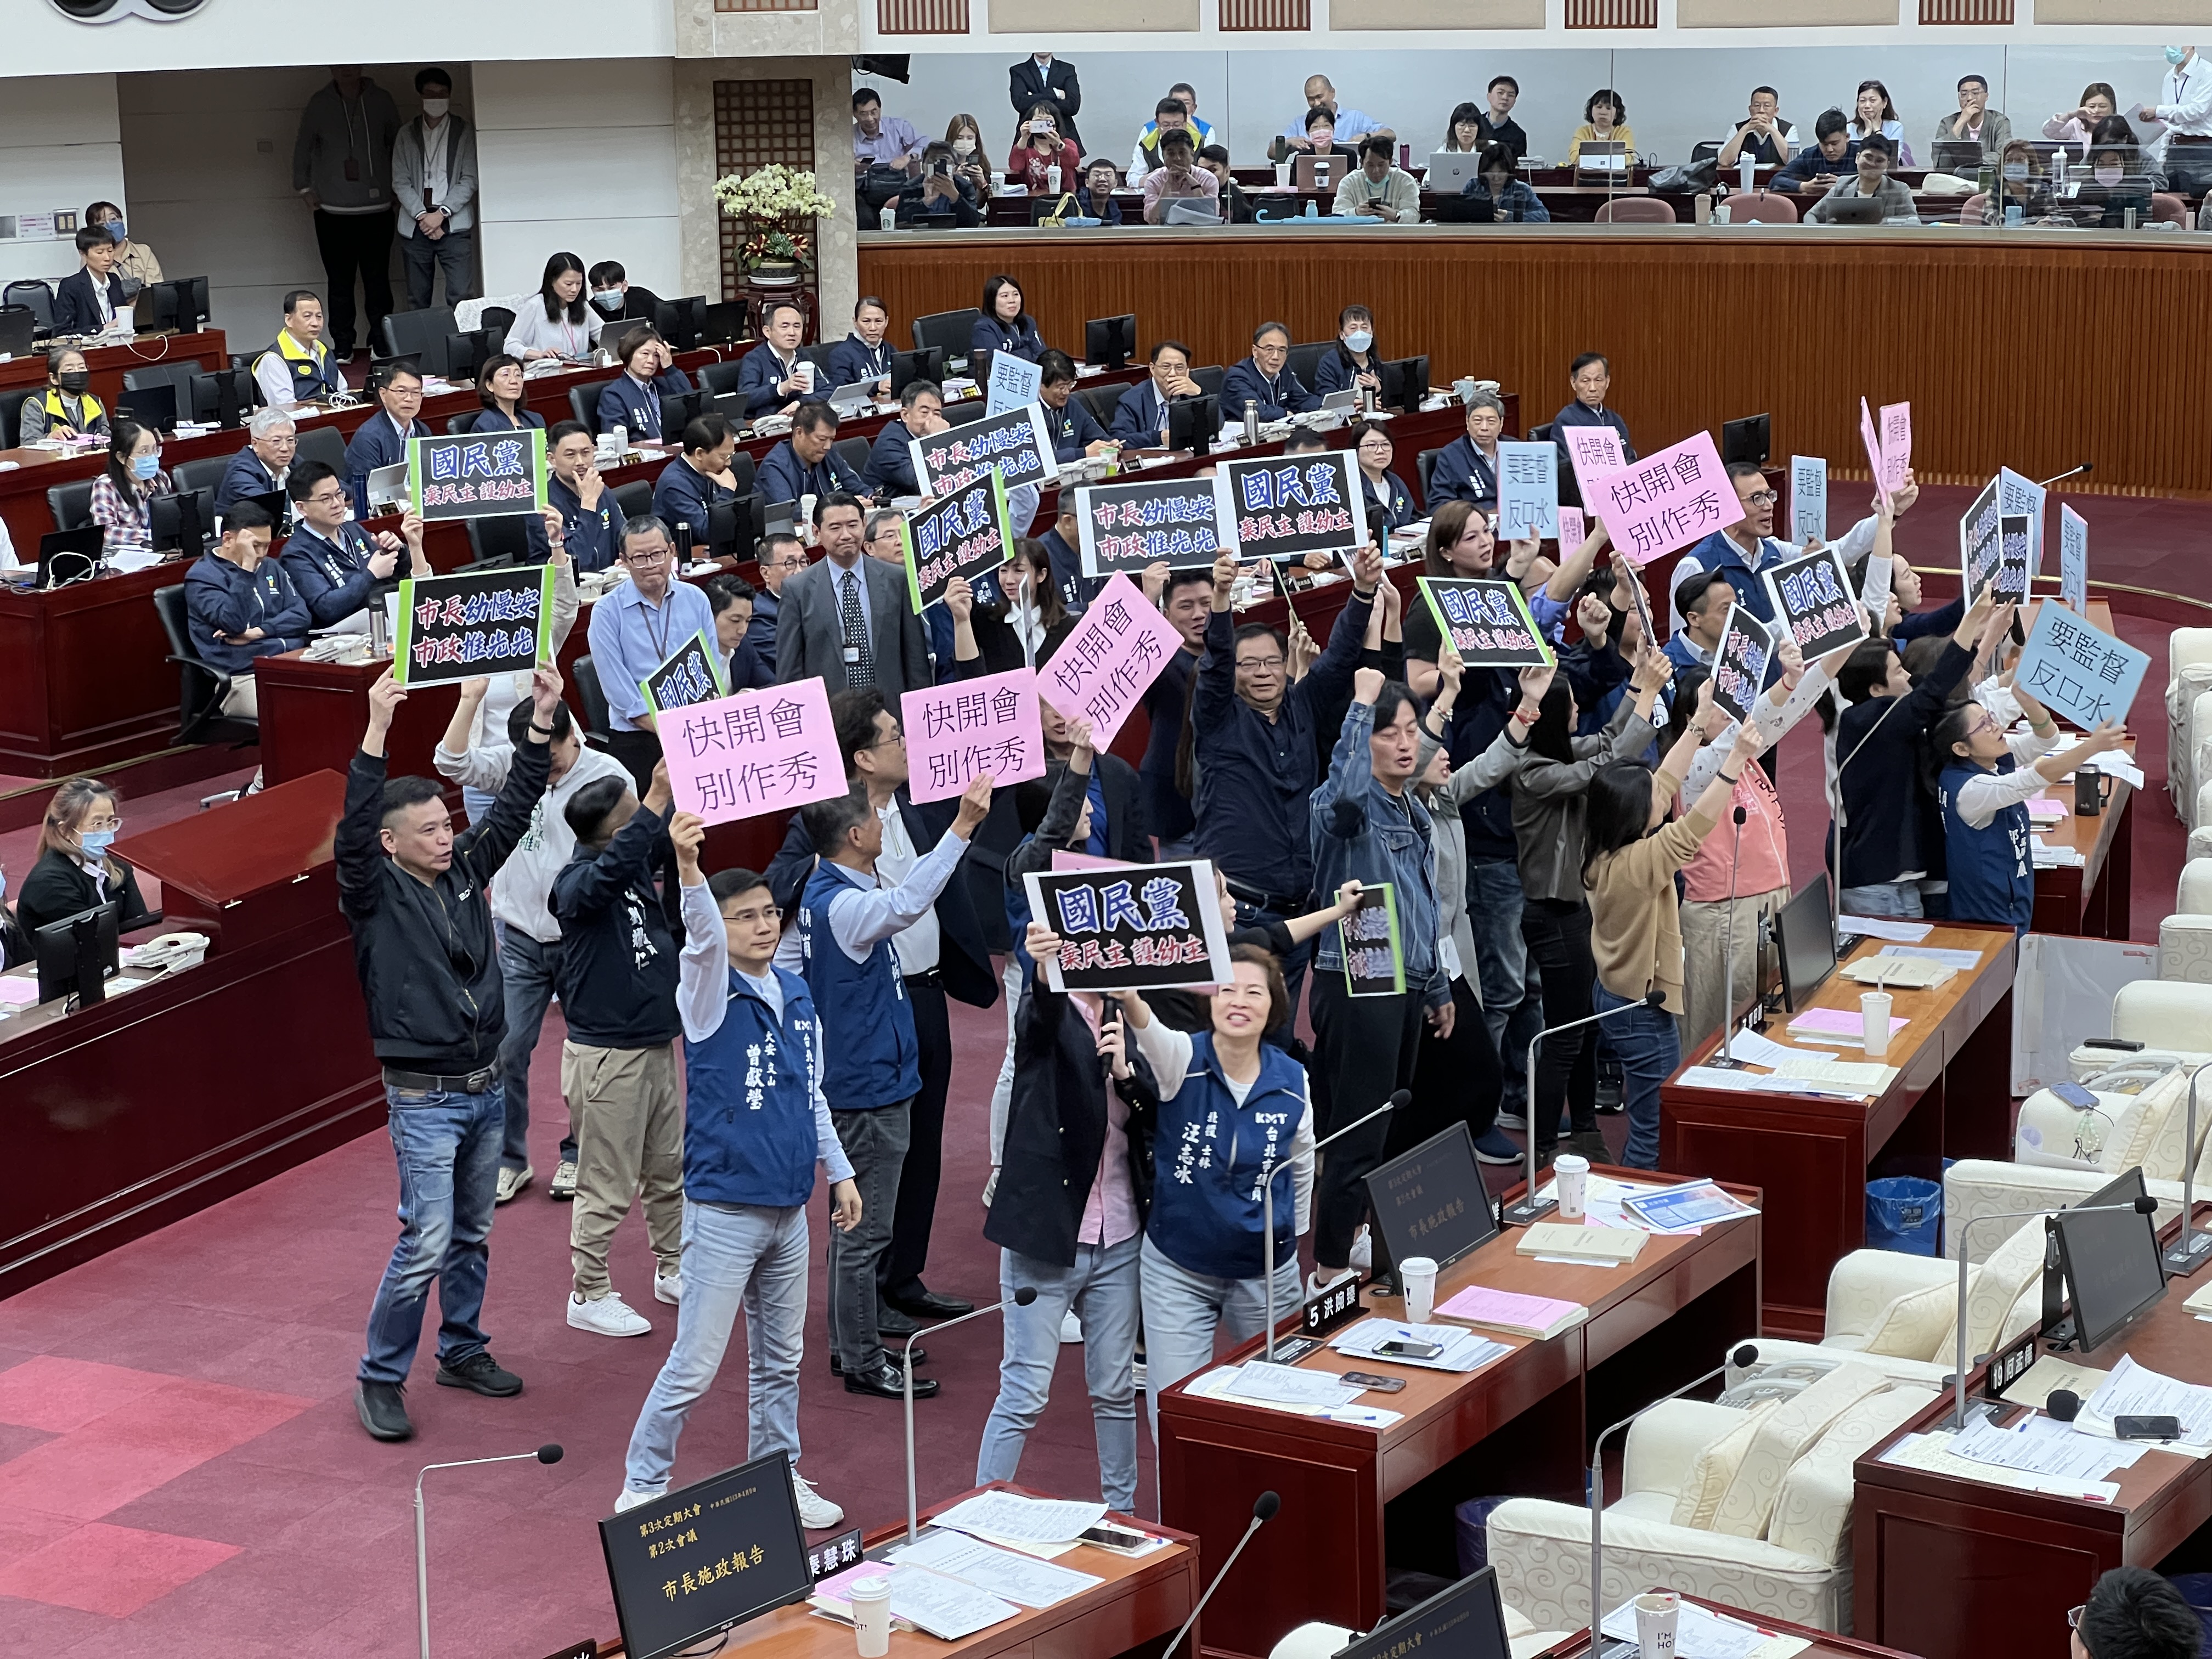 台北市议会今天开议，市长蒋万安进行施政报告前，蓝绿白议员提程序发言，在议场内吵翻天。记者钟维轩／摄影